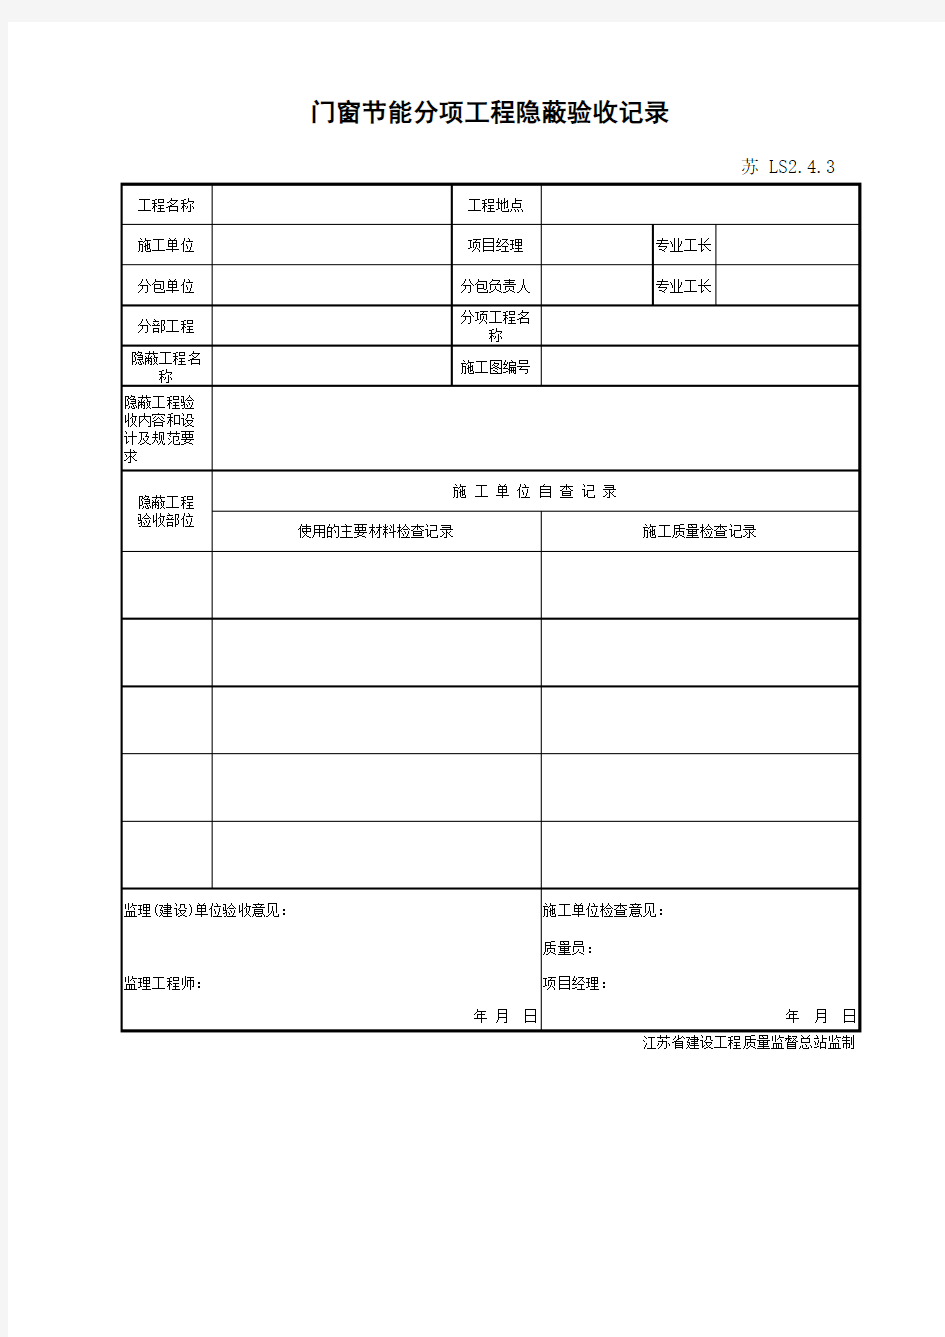 江苏省建设工程质监0190910六版表格文件LS2.4.3